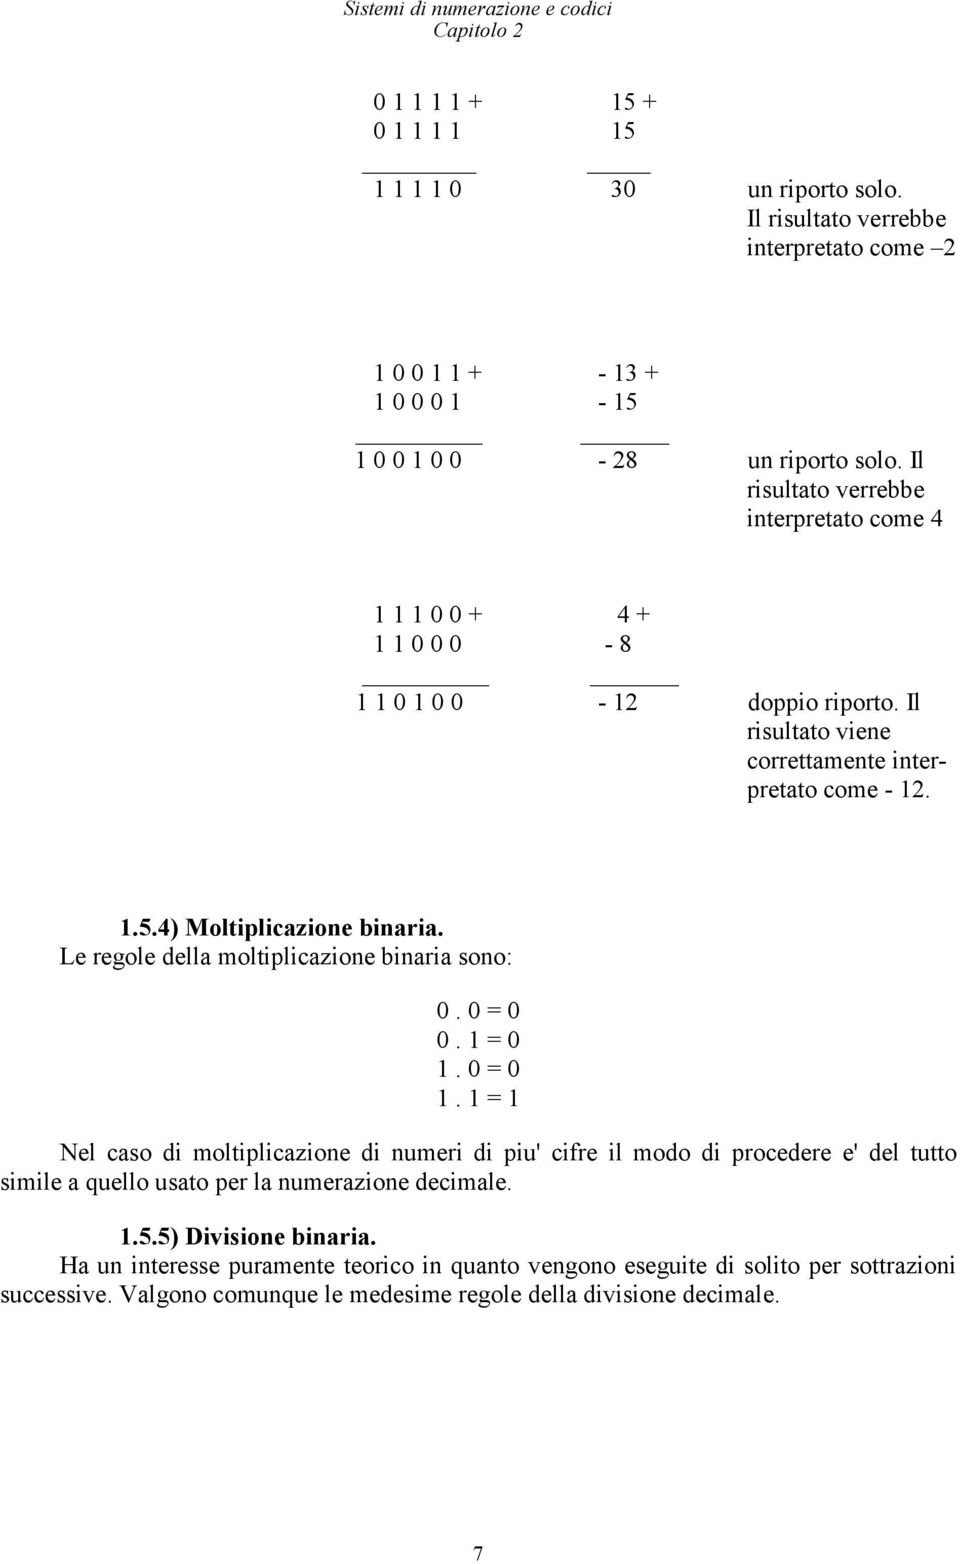 Le regle della mltiplicazine binaria sn: 0. 0 = 0 0. 1 = 0 1. 0 = 0 1.